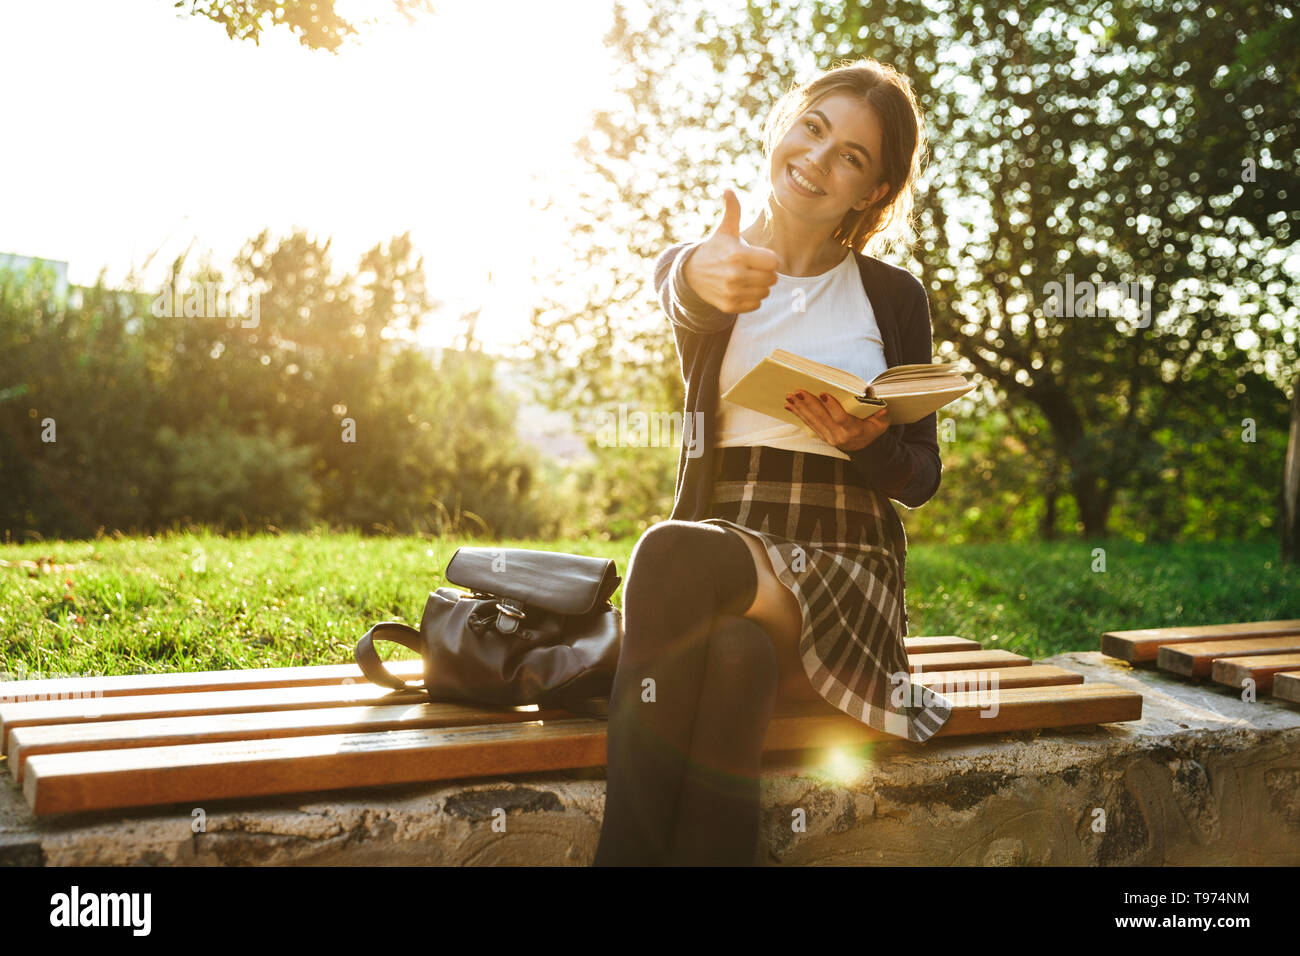 Bella ragazza adolescente indossano uniformi scolastiche libro lettura mentre è seduto su una panchina nel parco, pollice in alto Foto Stock